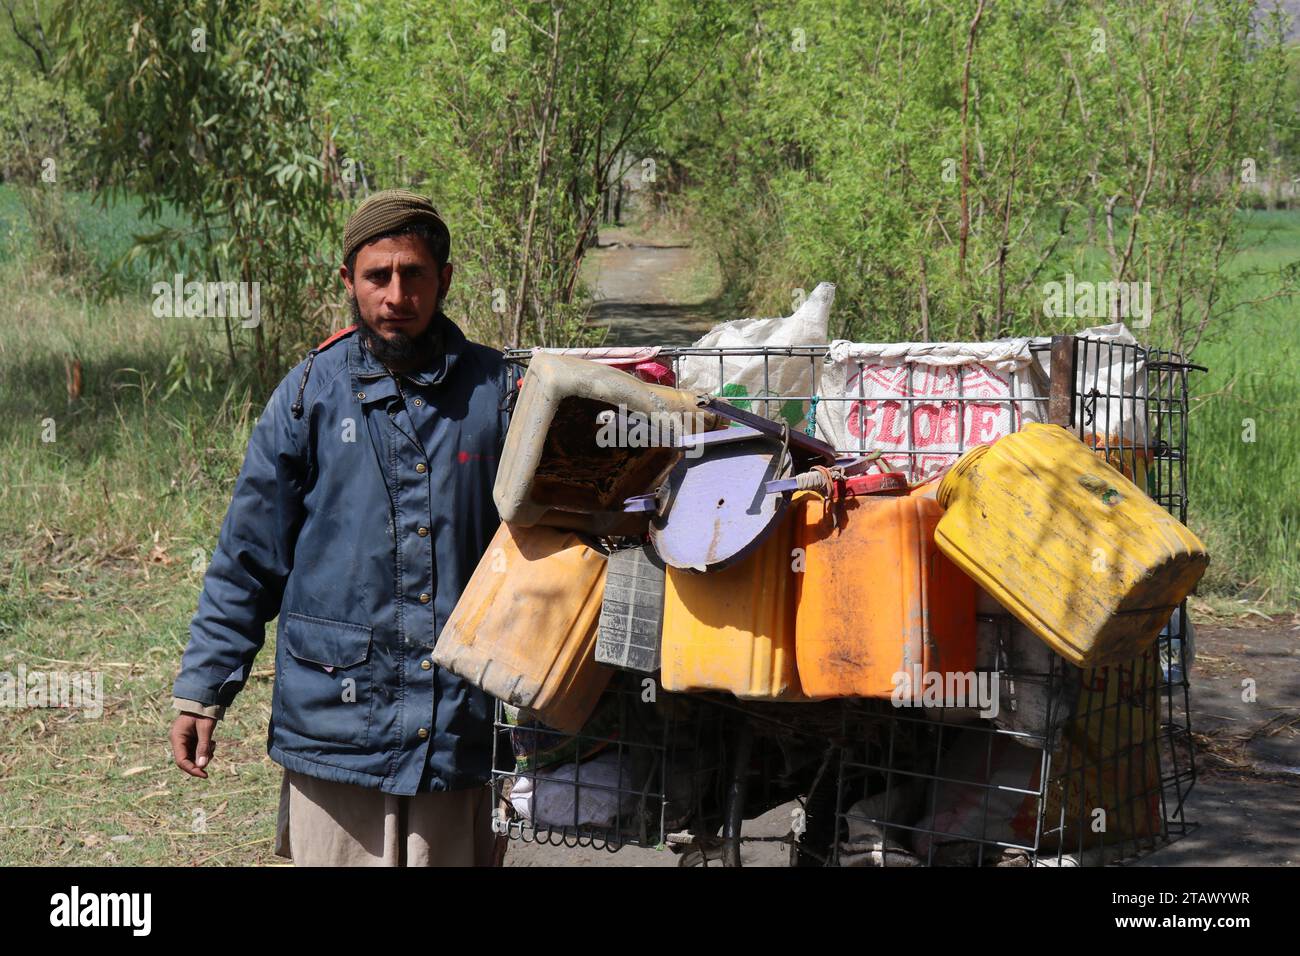 Un vieillard sans abri avec une barbe ayant besoin d'aide. Kaboul Afghanistan décembre 2023 Banque D'Images